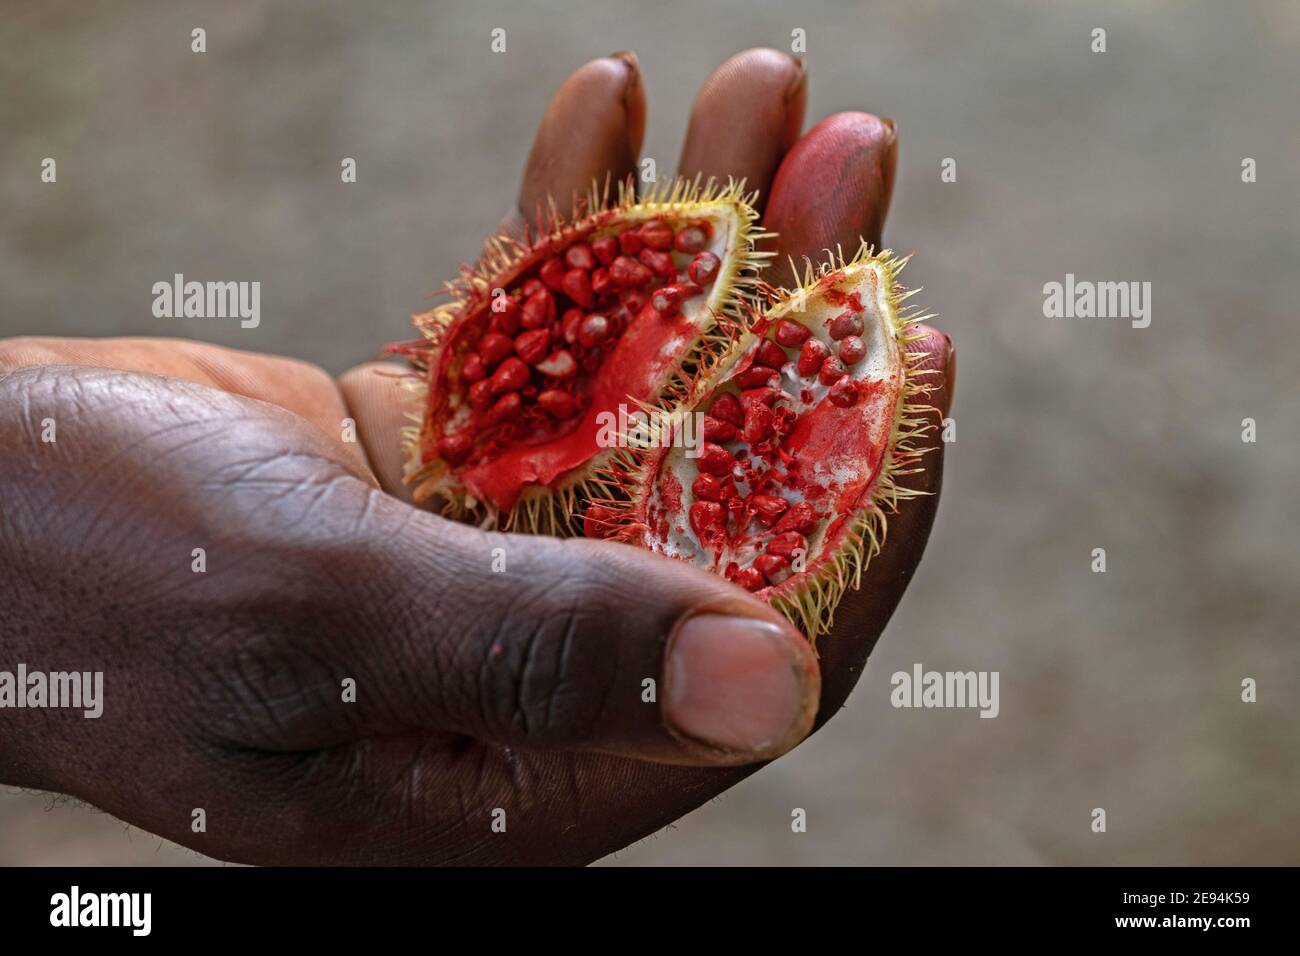 Nahaufnahme von reifen Achiote (Bixa orellana) Schoten, die die roten Samen zeigen, Quelle von Annatto, einer natürlichen orange-roten Würze, die als Lebensmittelfarbe verwendet wird Stockfoto